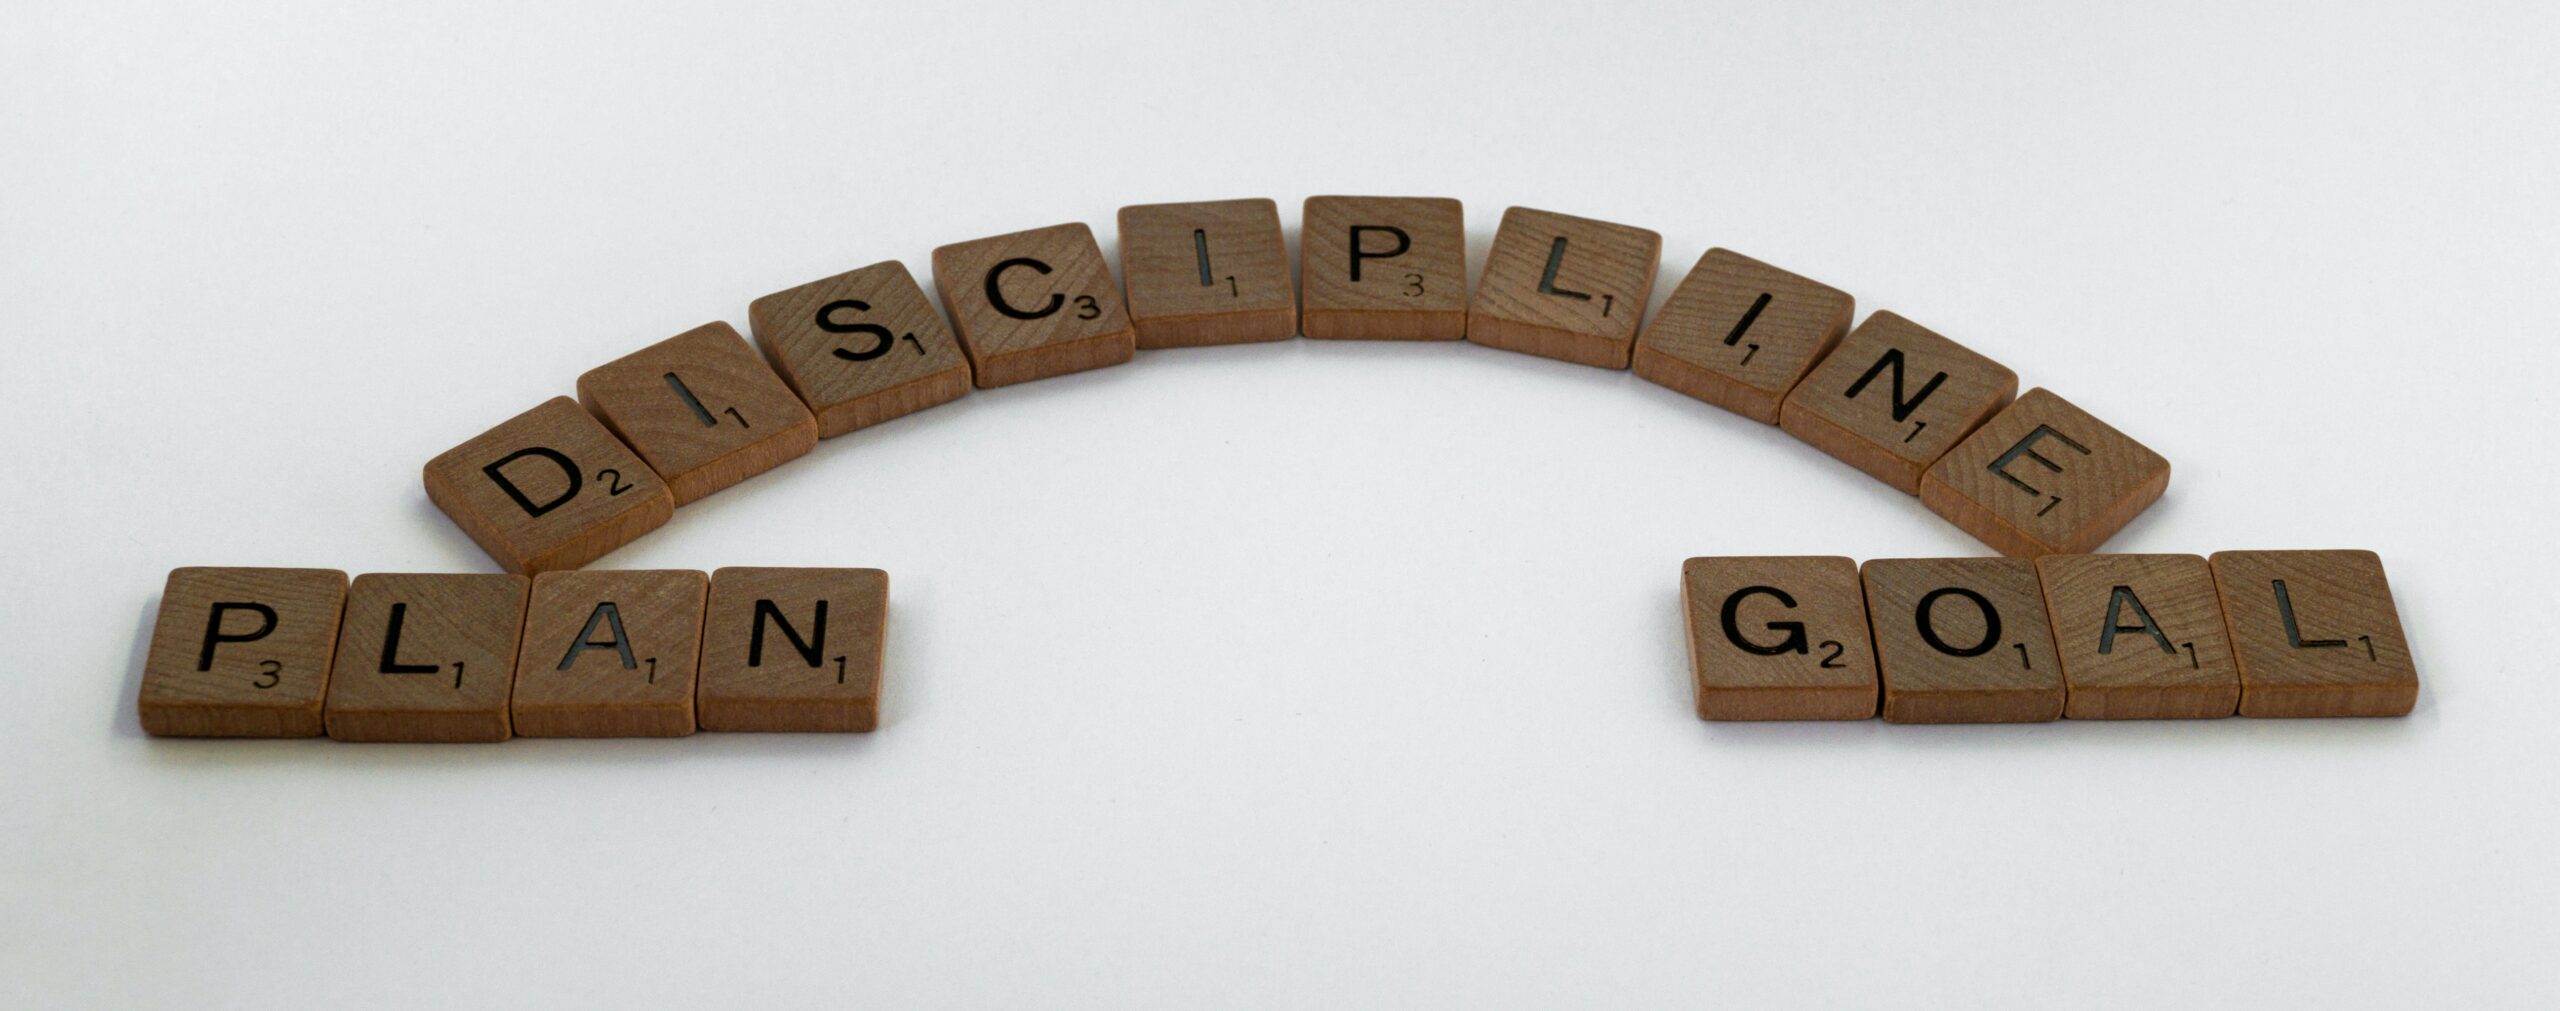 Disciplinary